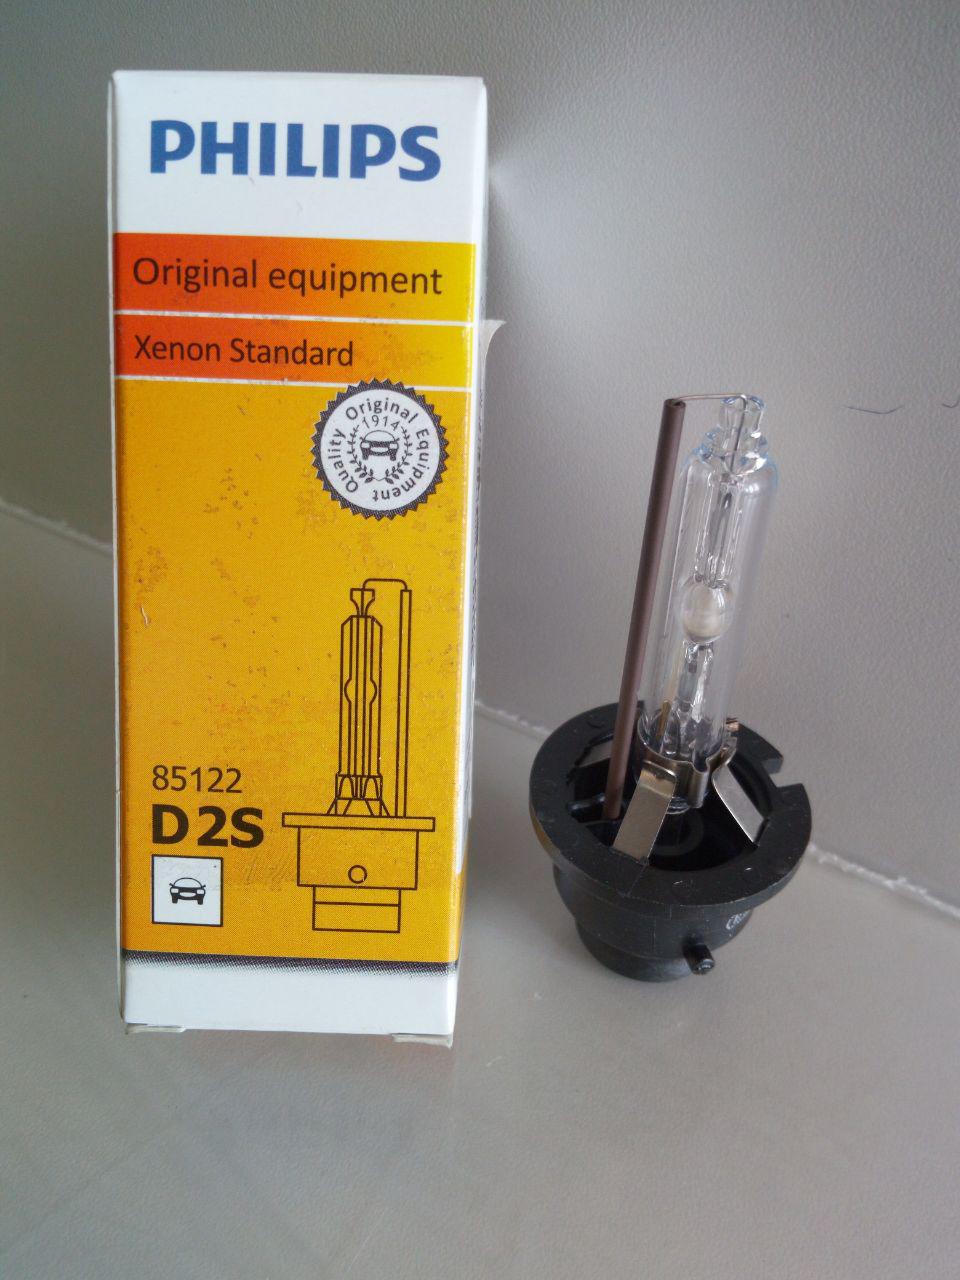 Ксенон оригинал. 85122 Philips d2s. D2s Philips 35w 85122 03v. Philips d2s Original Xenon Standart — 85122. Лампа ксенон d2s 35w 85122+.